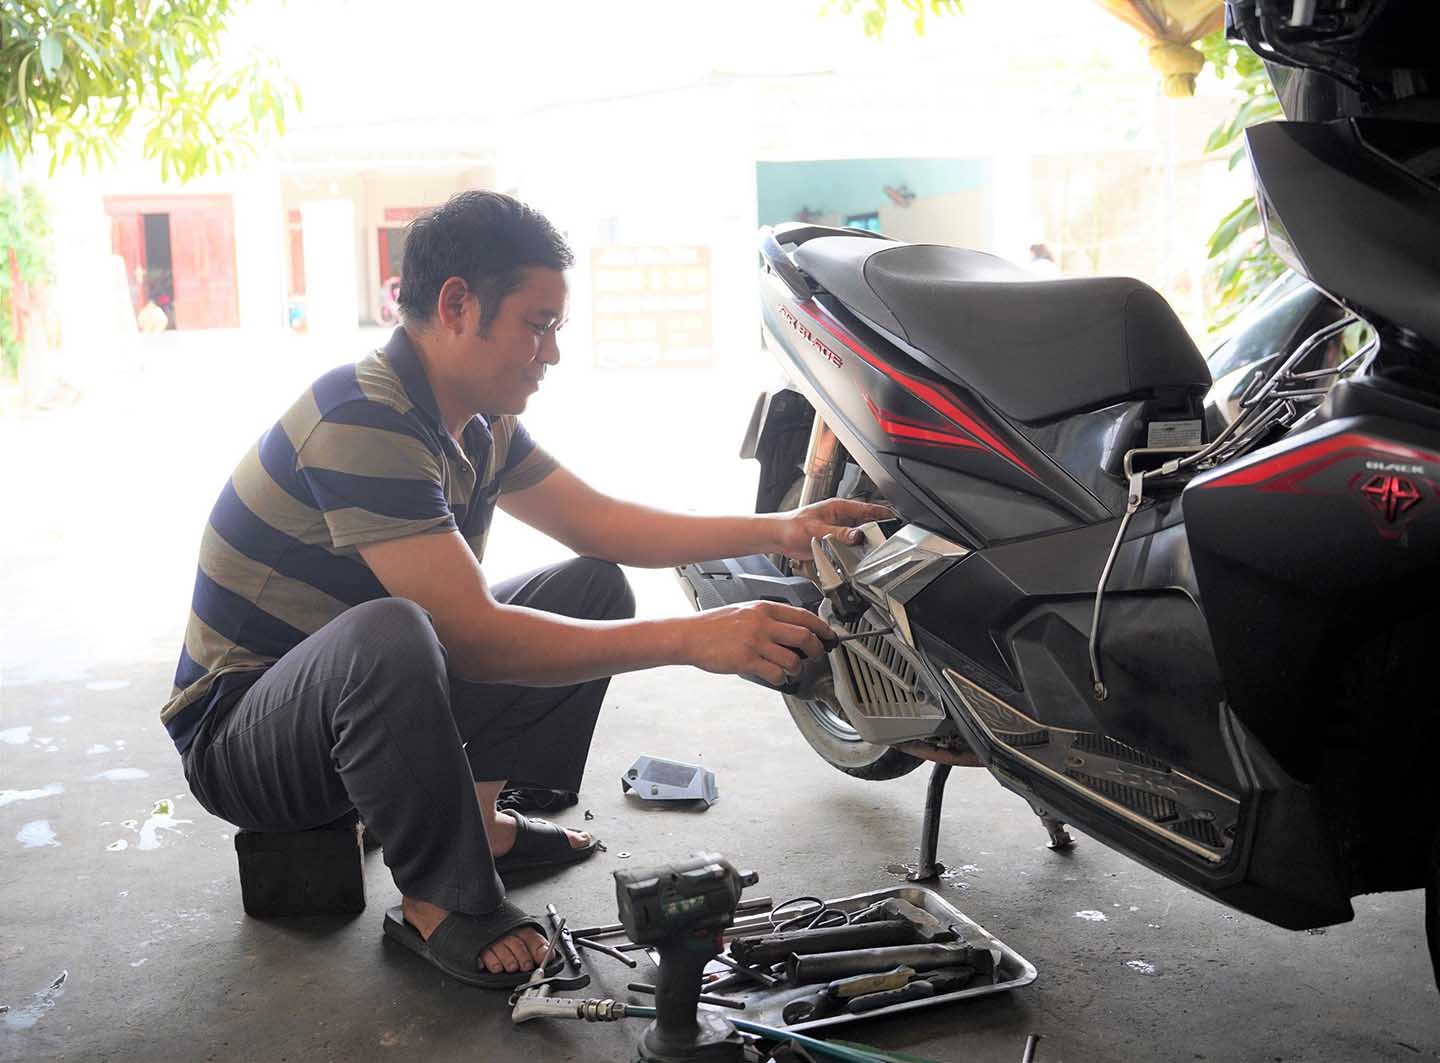 Anh Đoàn văn Kim làm nghề sửa xe máy ở xã Quỳnh Dị, thị xã Hoàng Mai. Ảnh: Duy Chương